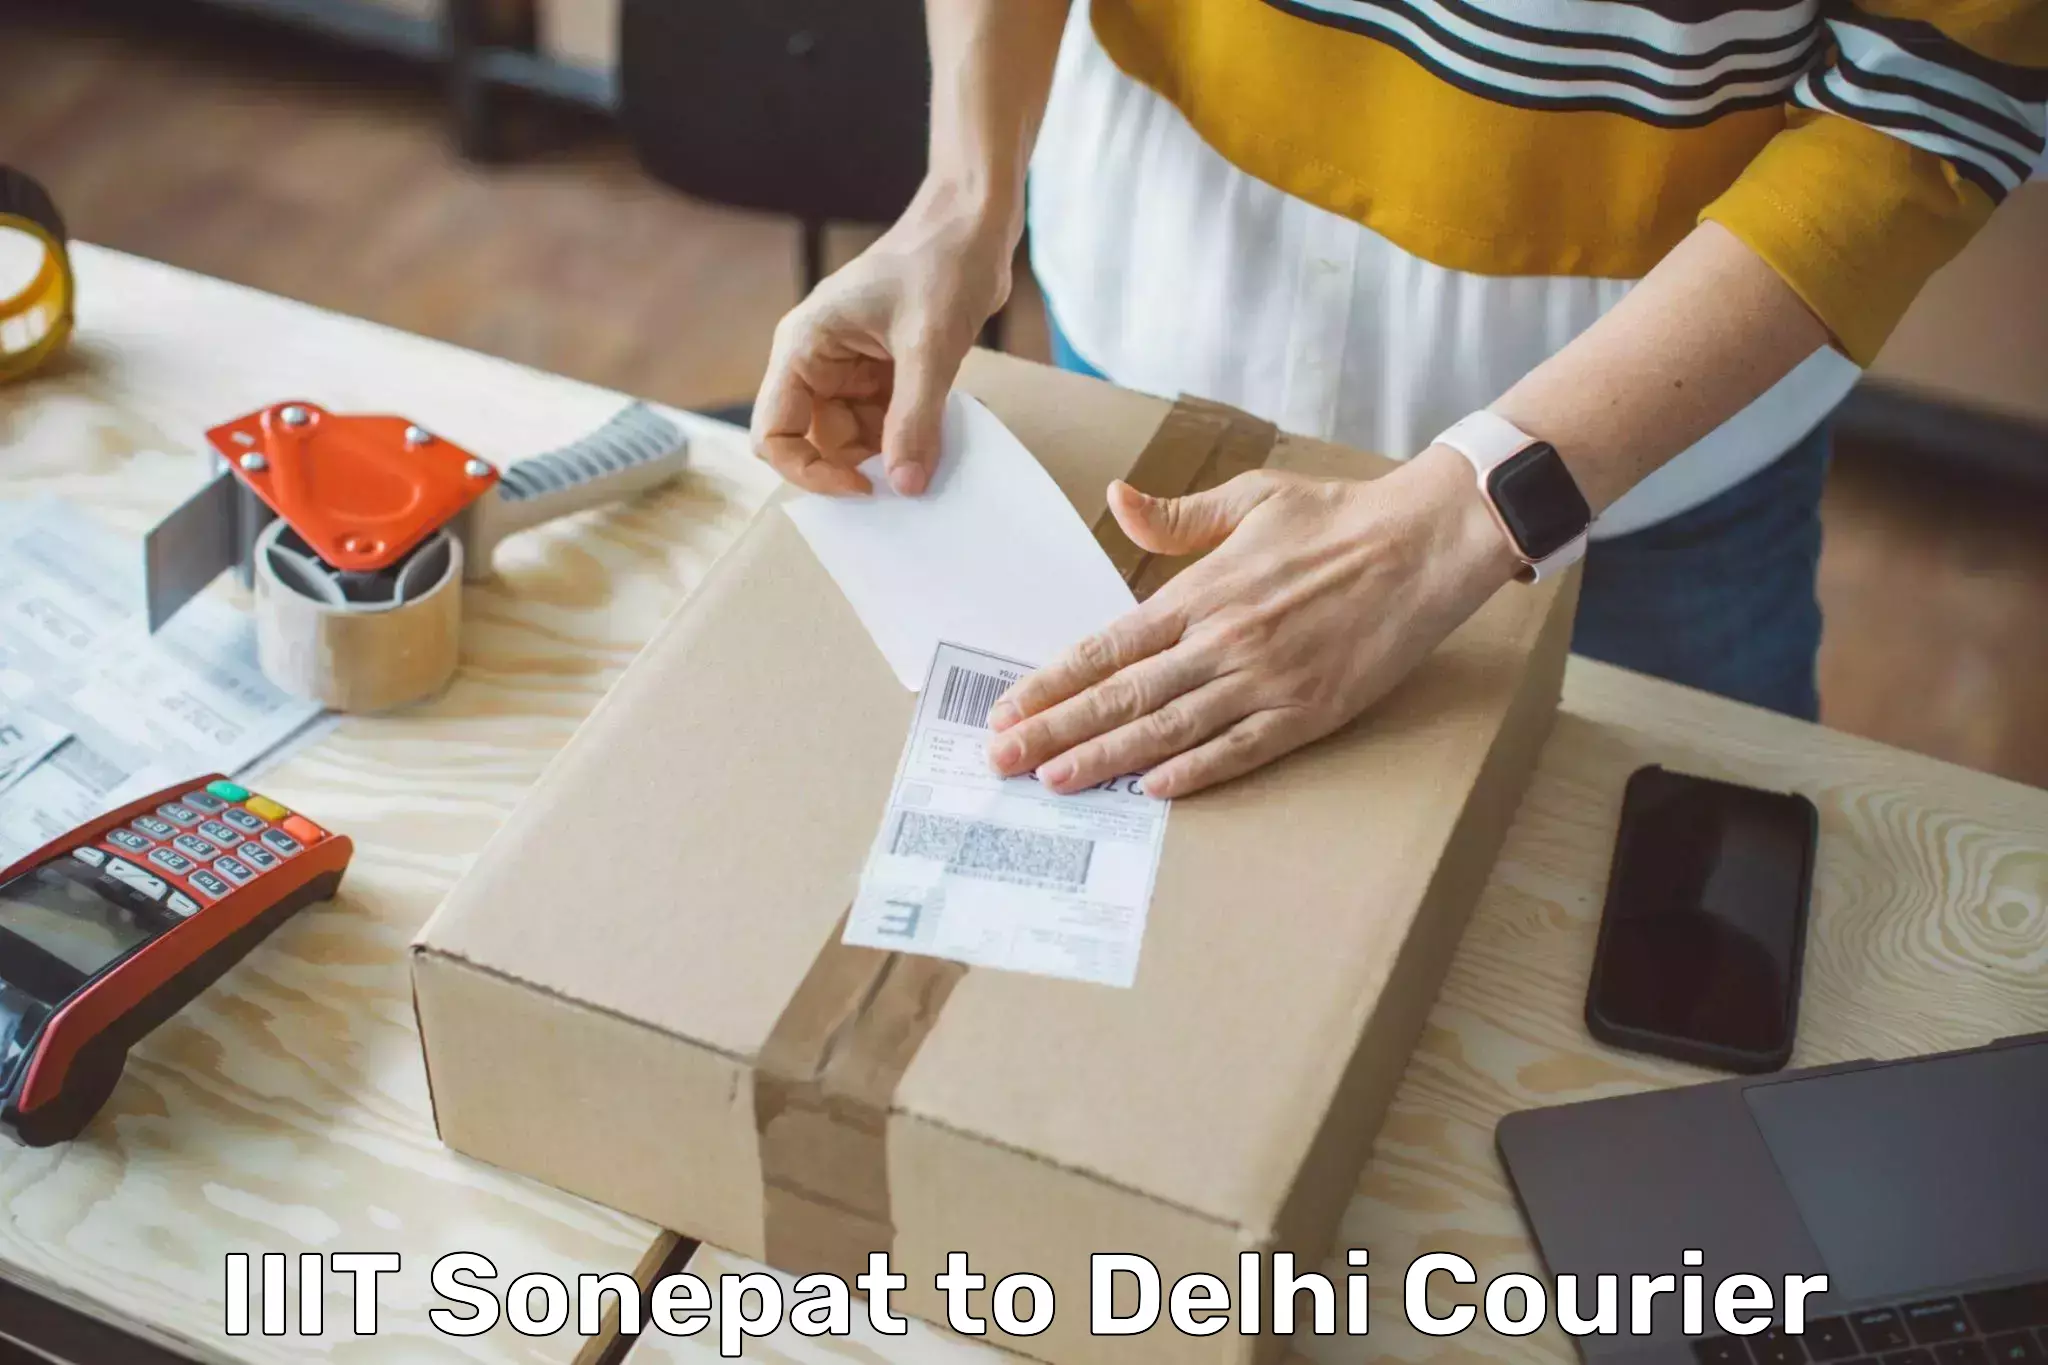 Business courier solutions IIIT Sonepat to University of Delhi